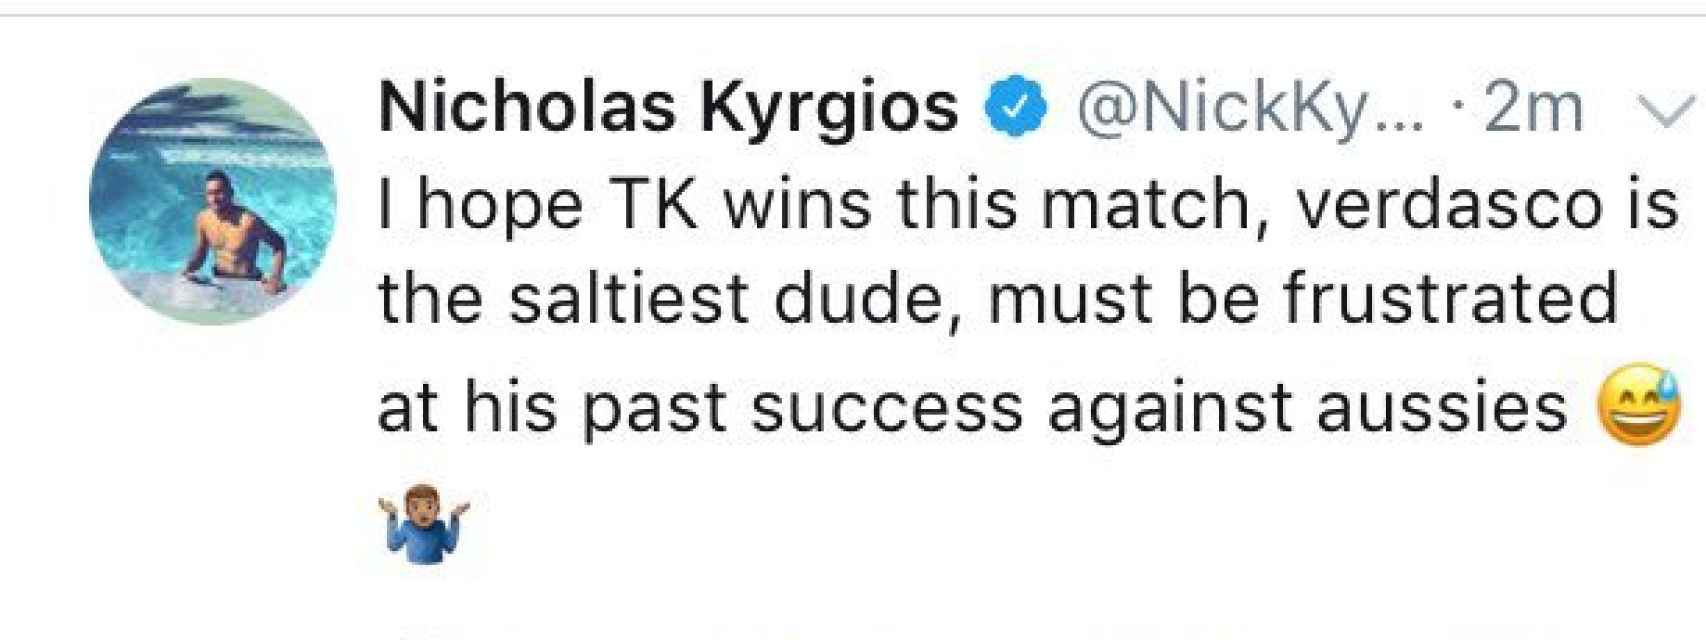 El primer tuit de Nick Kyrgios contra Verdasco, luego borrado.